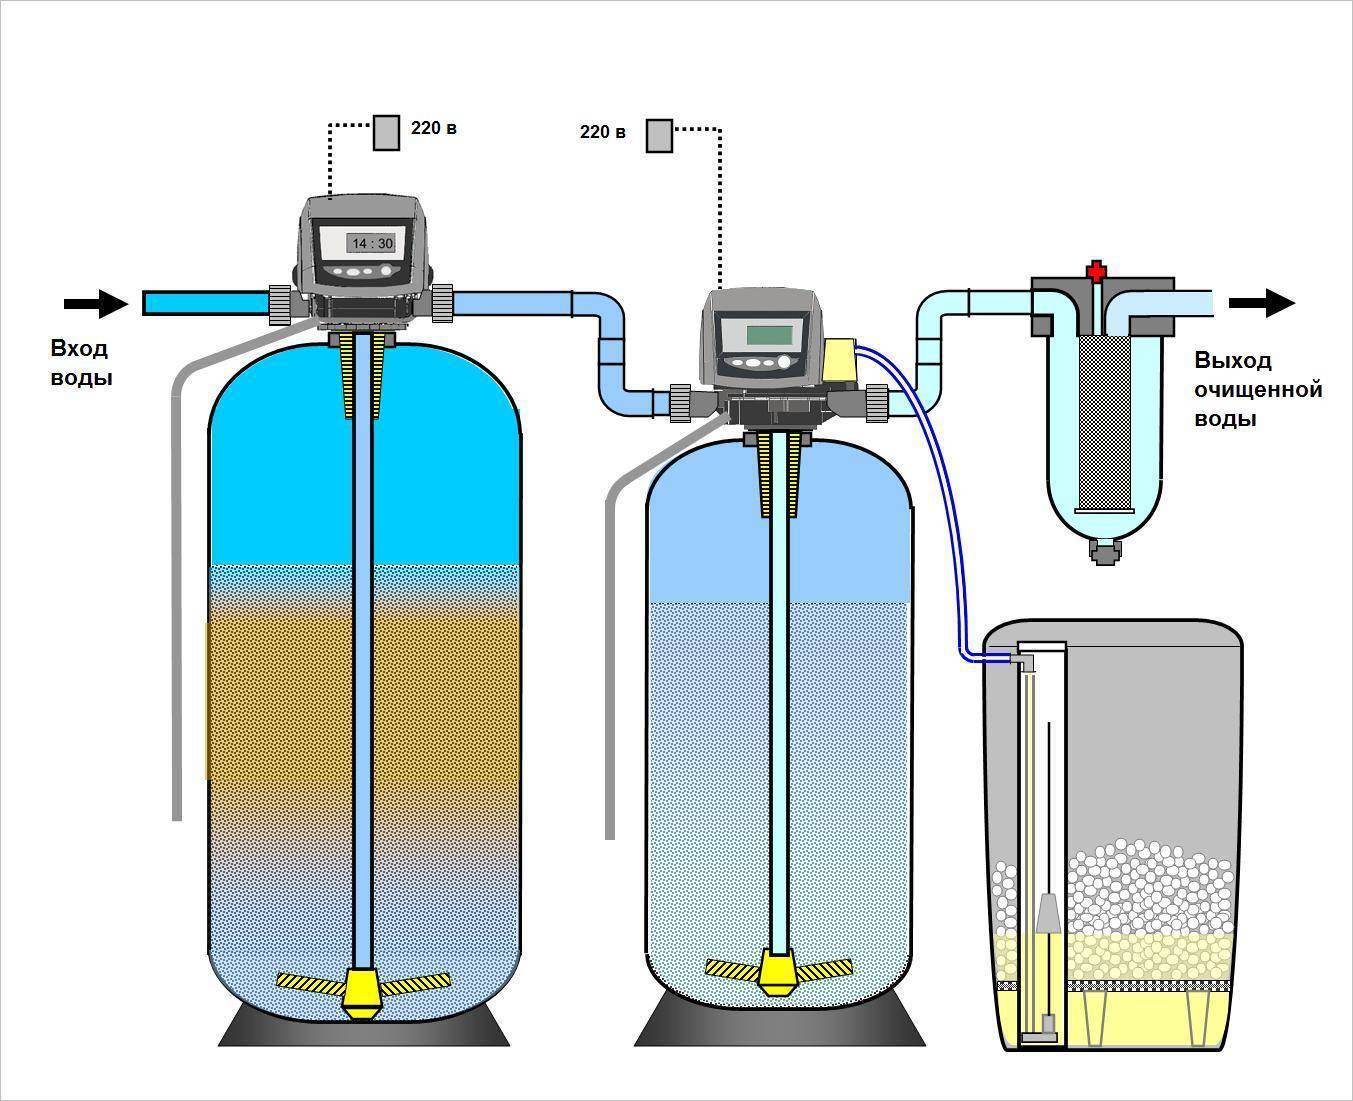 Вихревыми очистка воды. Система фильтров для очистки воды из скважины от железа. Система на фильтрующая для воды из скважины. Фильтр отстойник от песка для воды из скважины. Фильтр обезжелезиватель для воды из скважины.